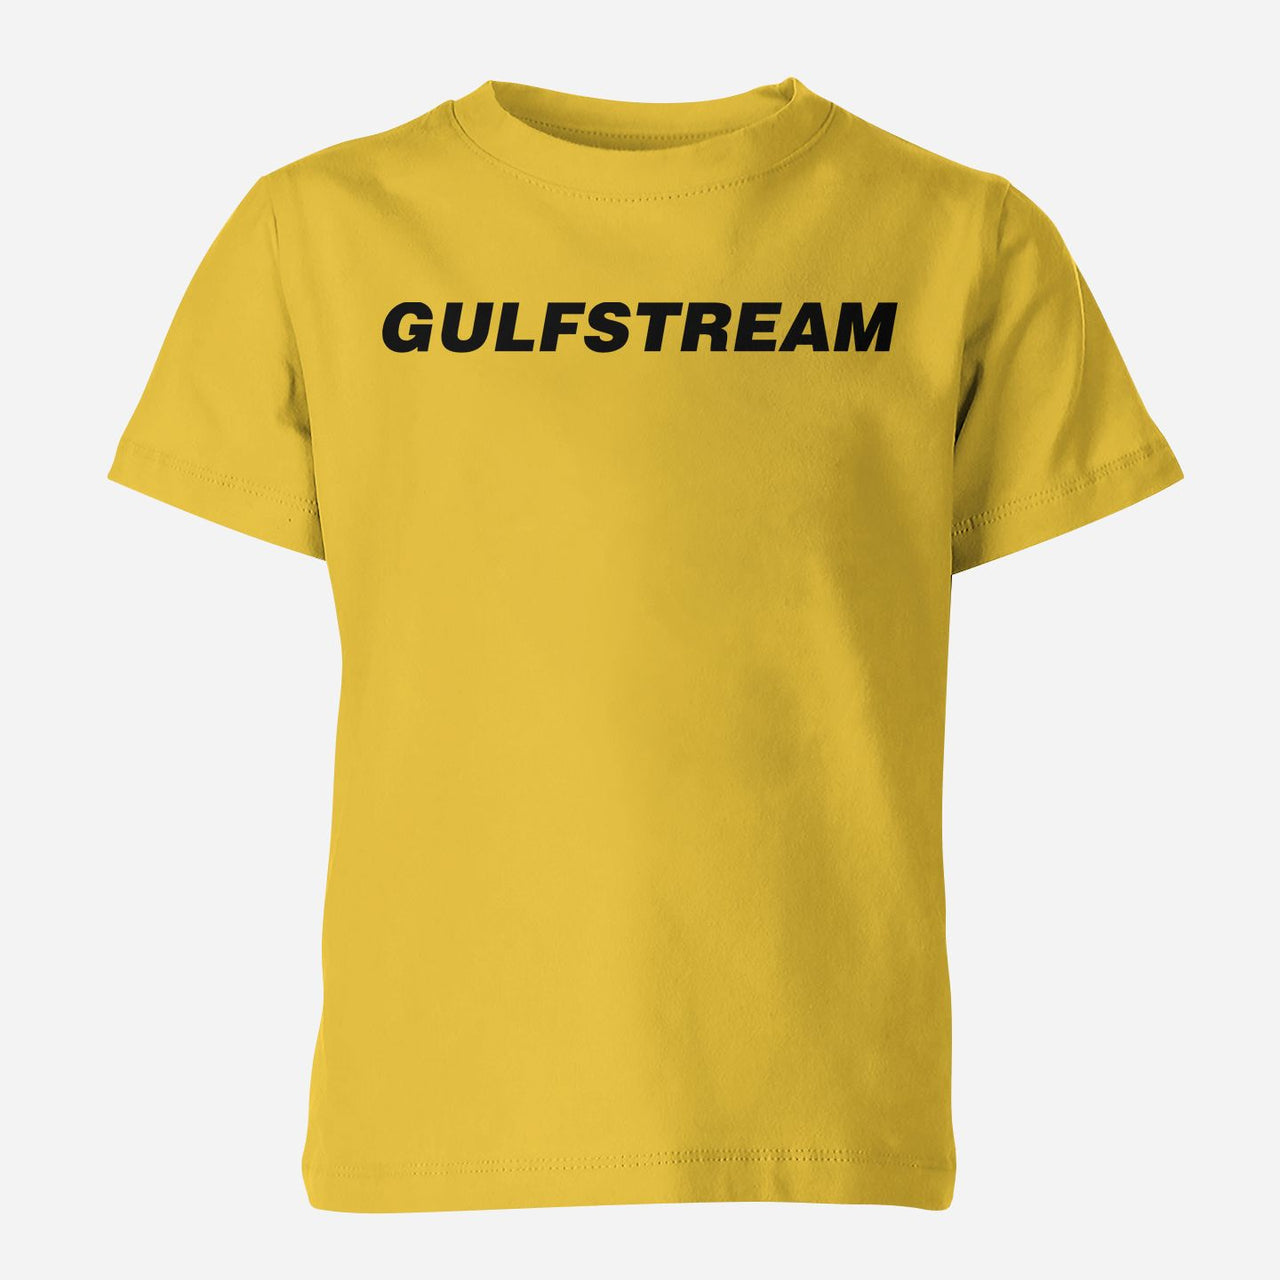 Gulfstream & Text Designed Children T-Shirts